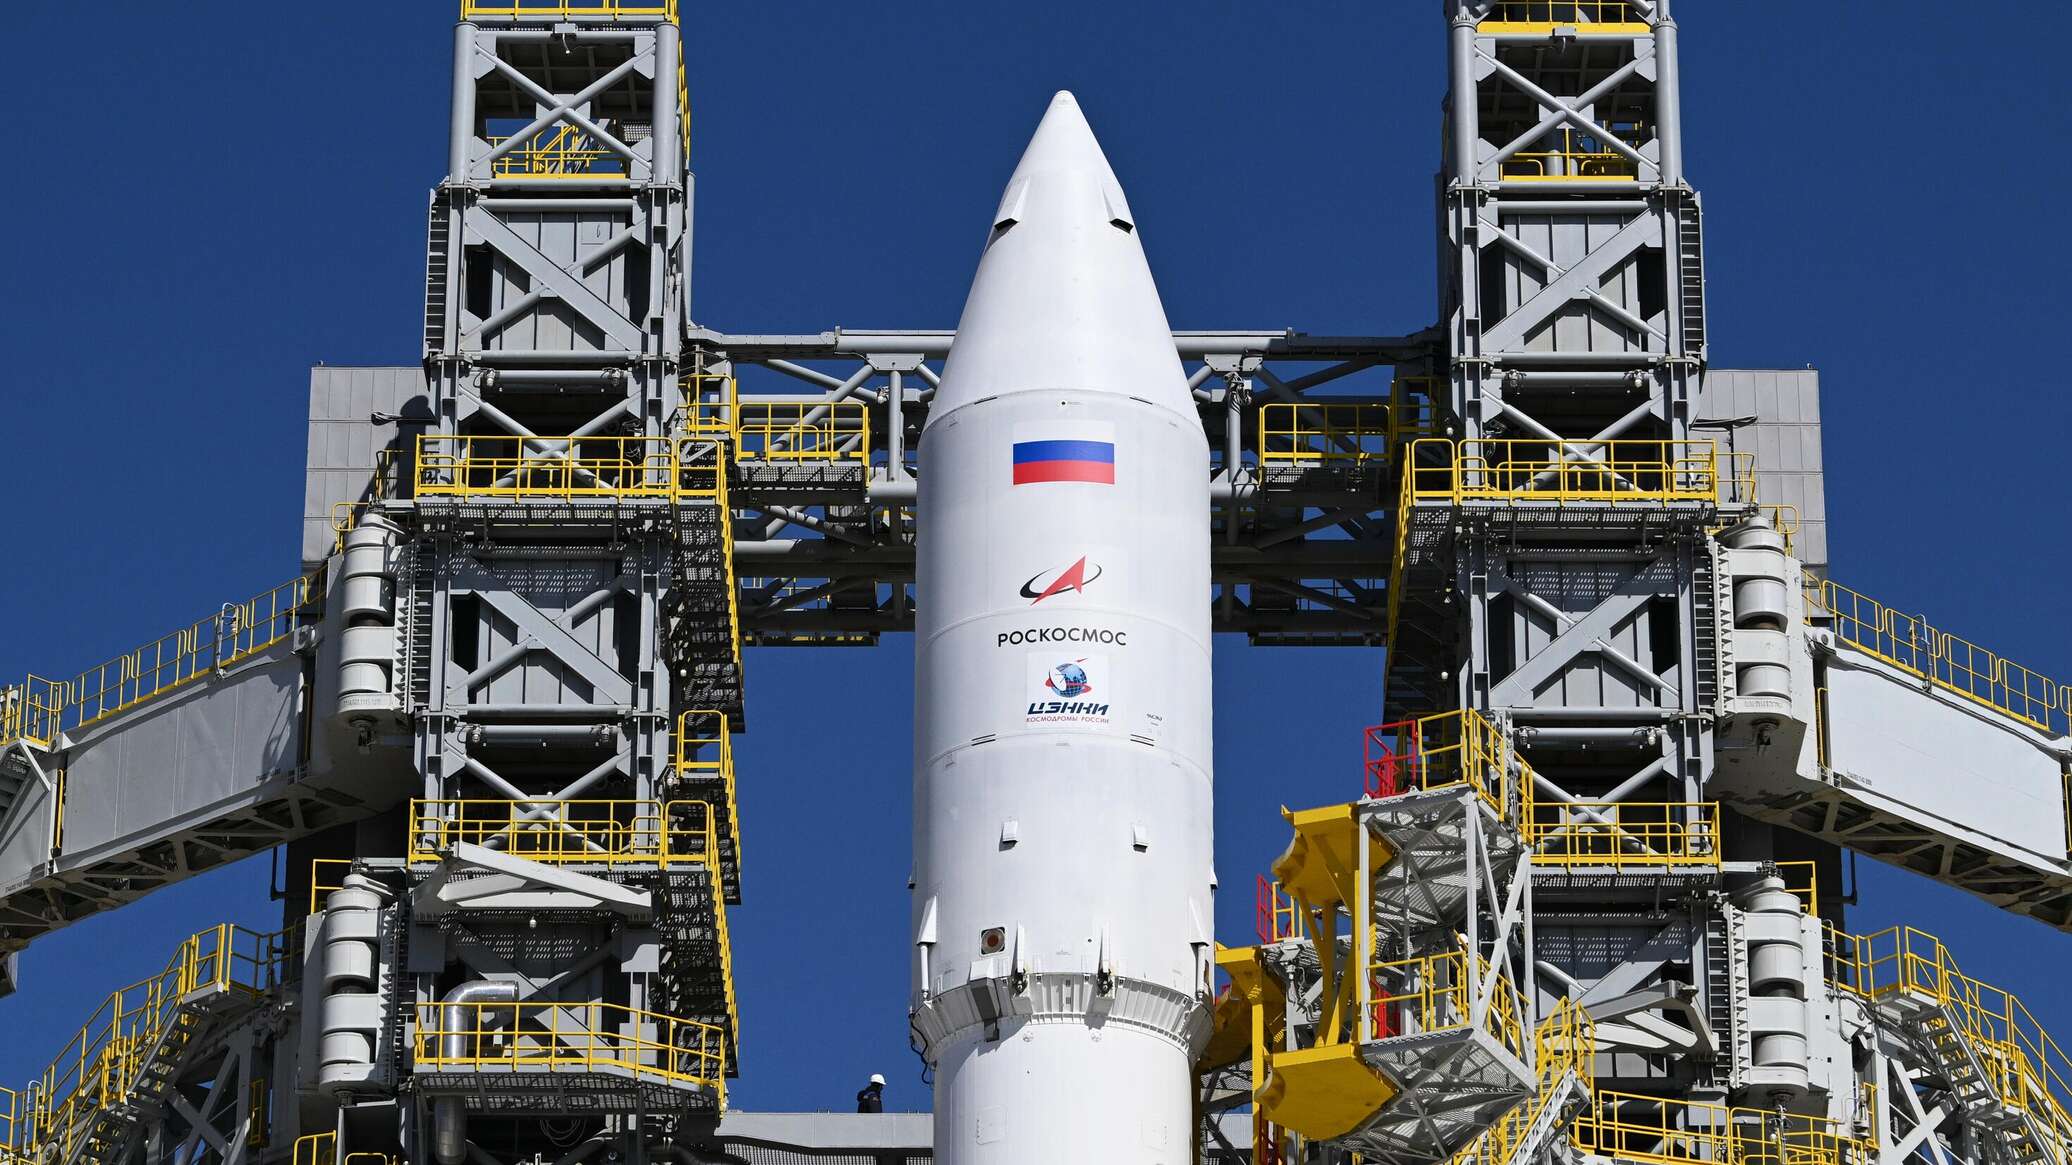 إطلاق ناجح لصاروخ "أنغارا- أي5" الروسي العملاق إلى الفضاء... فيديو